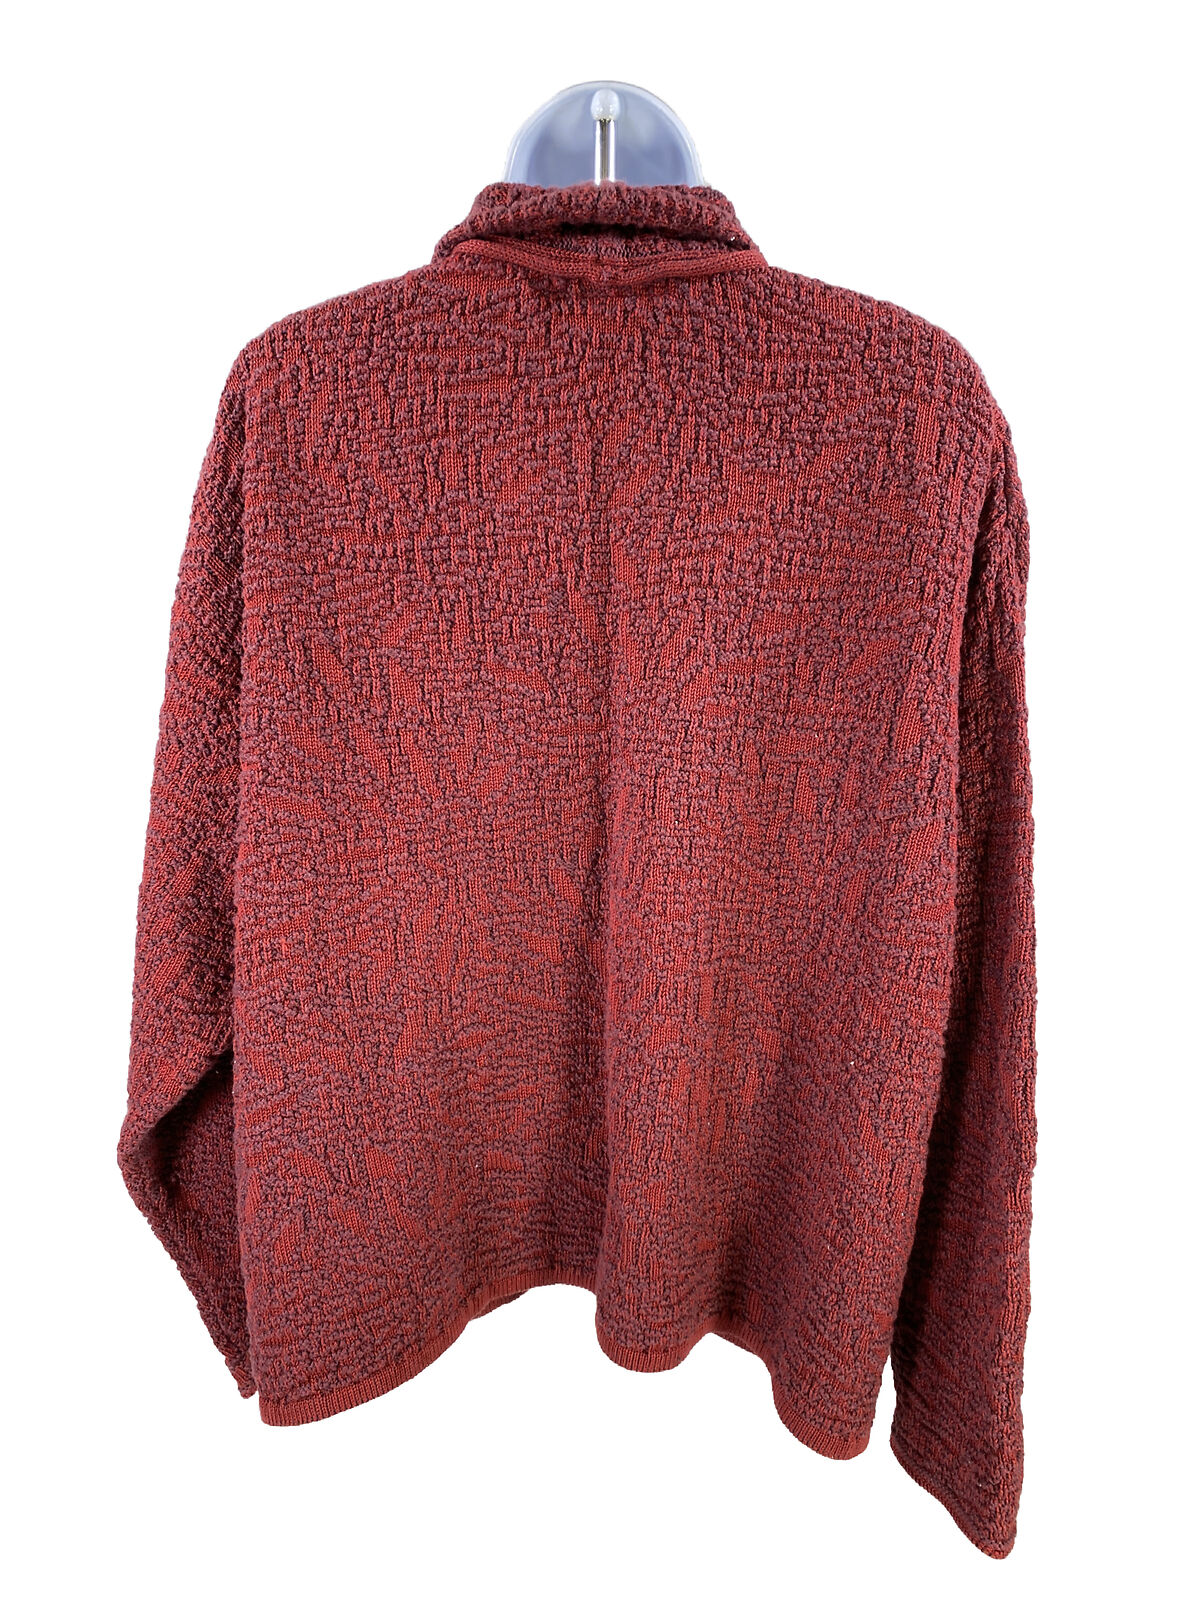 Chris Triola Suéter tipo cárdigan abierto de algodón rojo para mujer - M